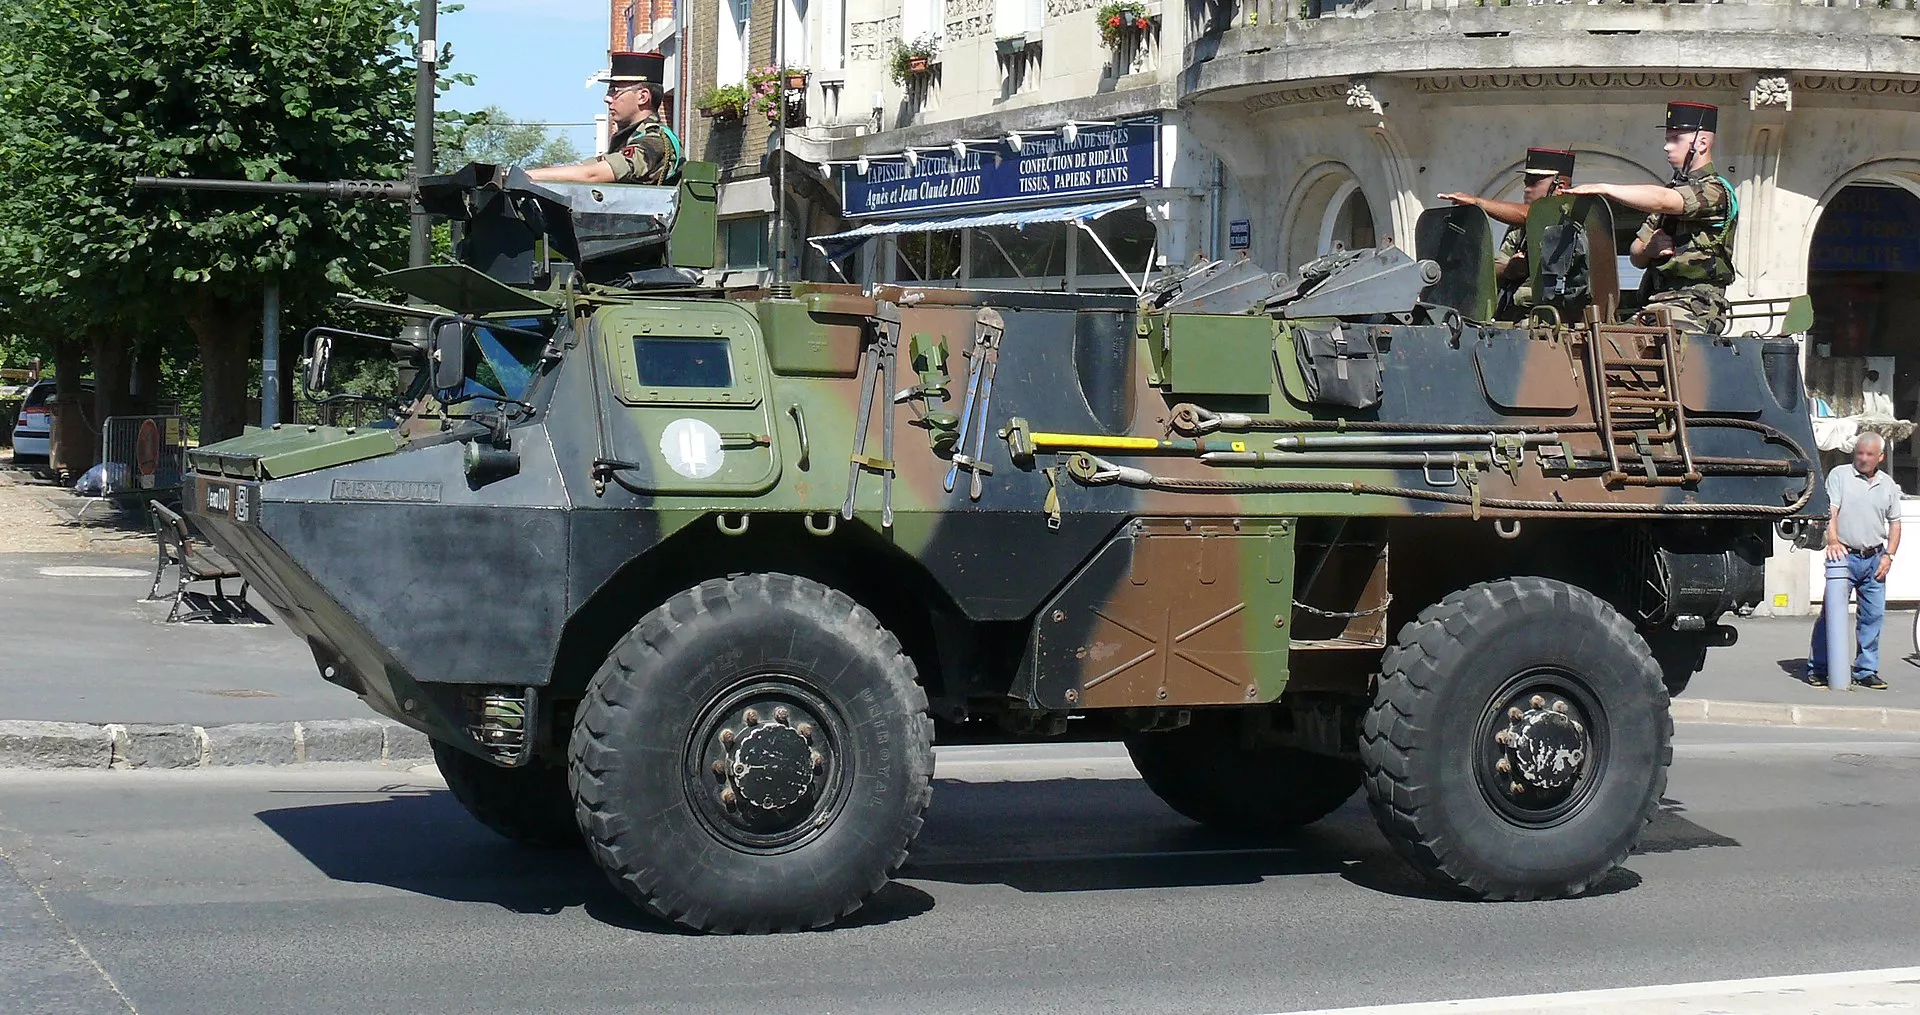 VAB 3-го инженерного полка на параде в честь Дня взятия Бастилии, 14 июля 2010 года. Фото – Википедия.